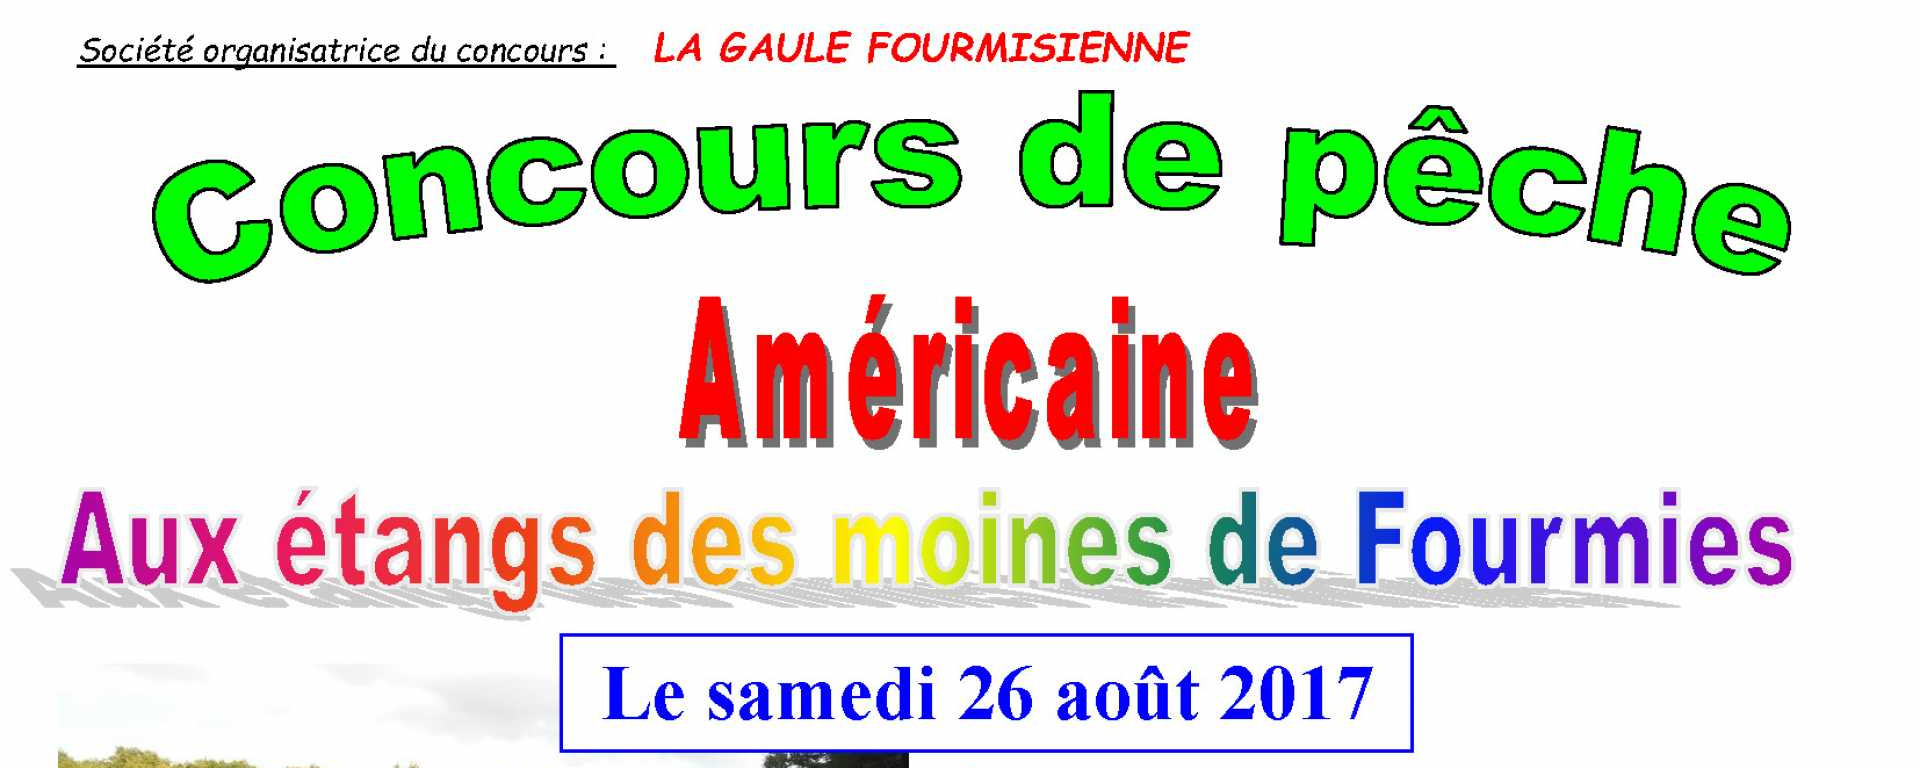 Organisé par La Gaulle Fourmisienne le samedi 26 août 2017 aux Étangs des Moines